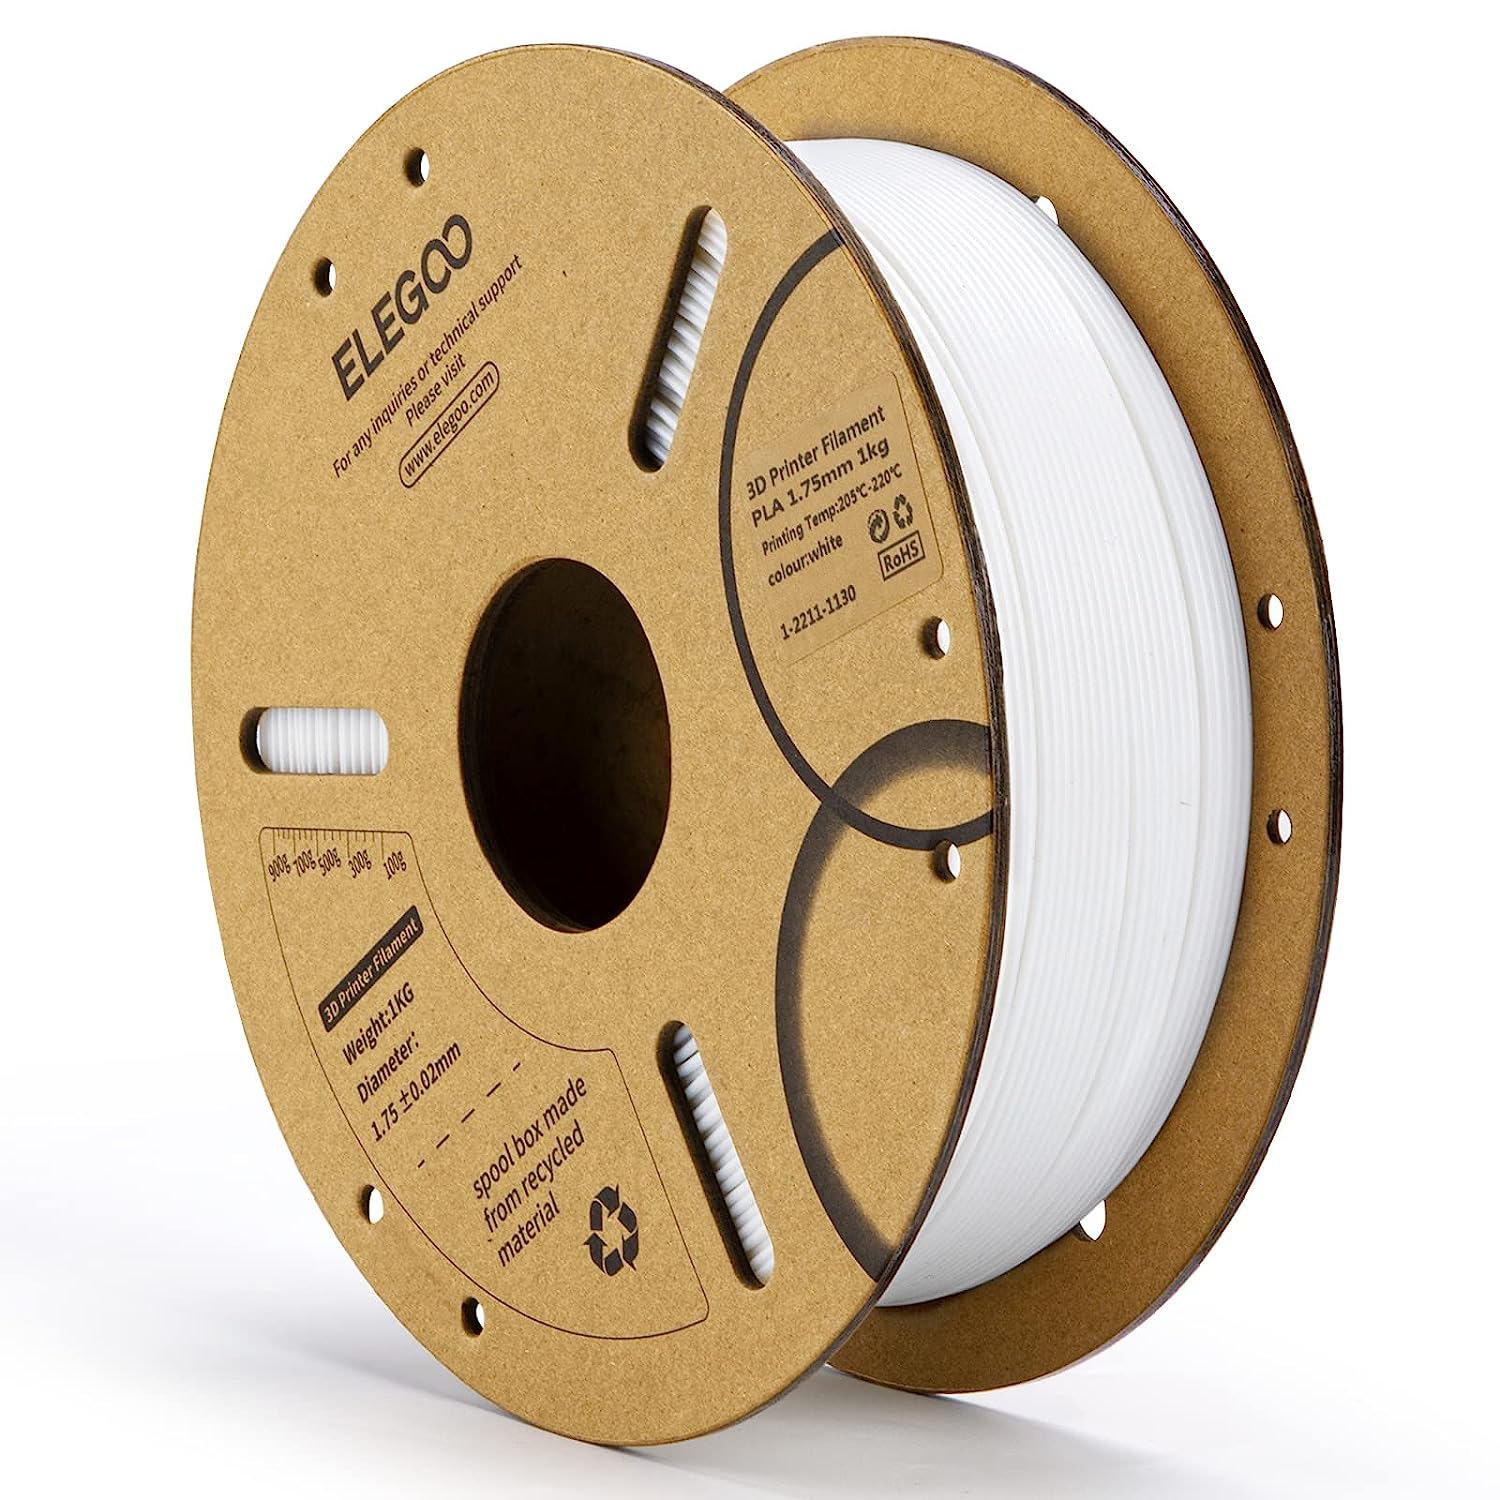 ELEGOO PLA Filament 1.75mm 3D Printer Filament 1Kg Cardboard Spool - White